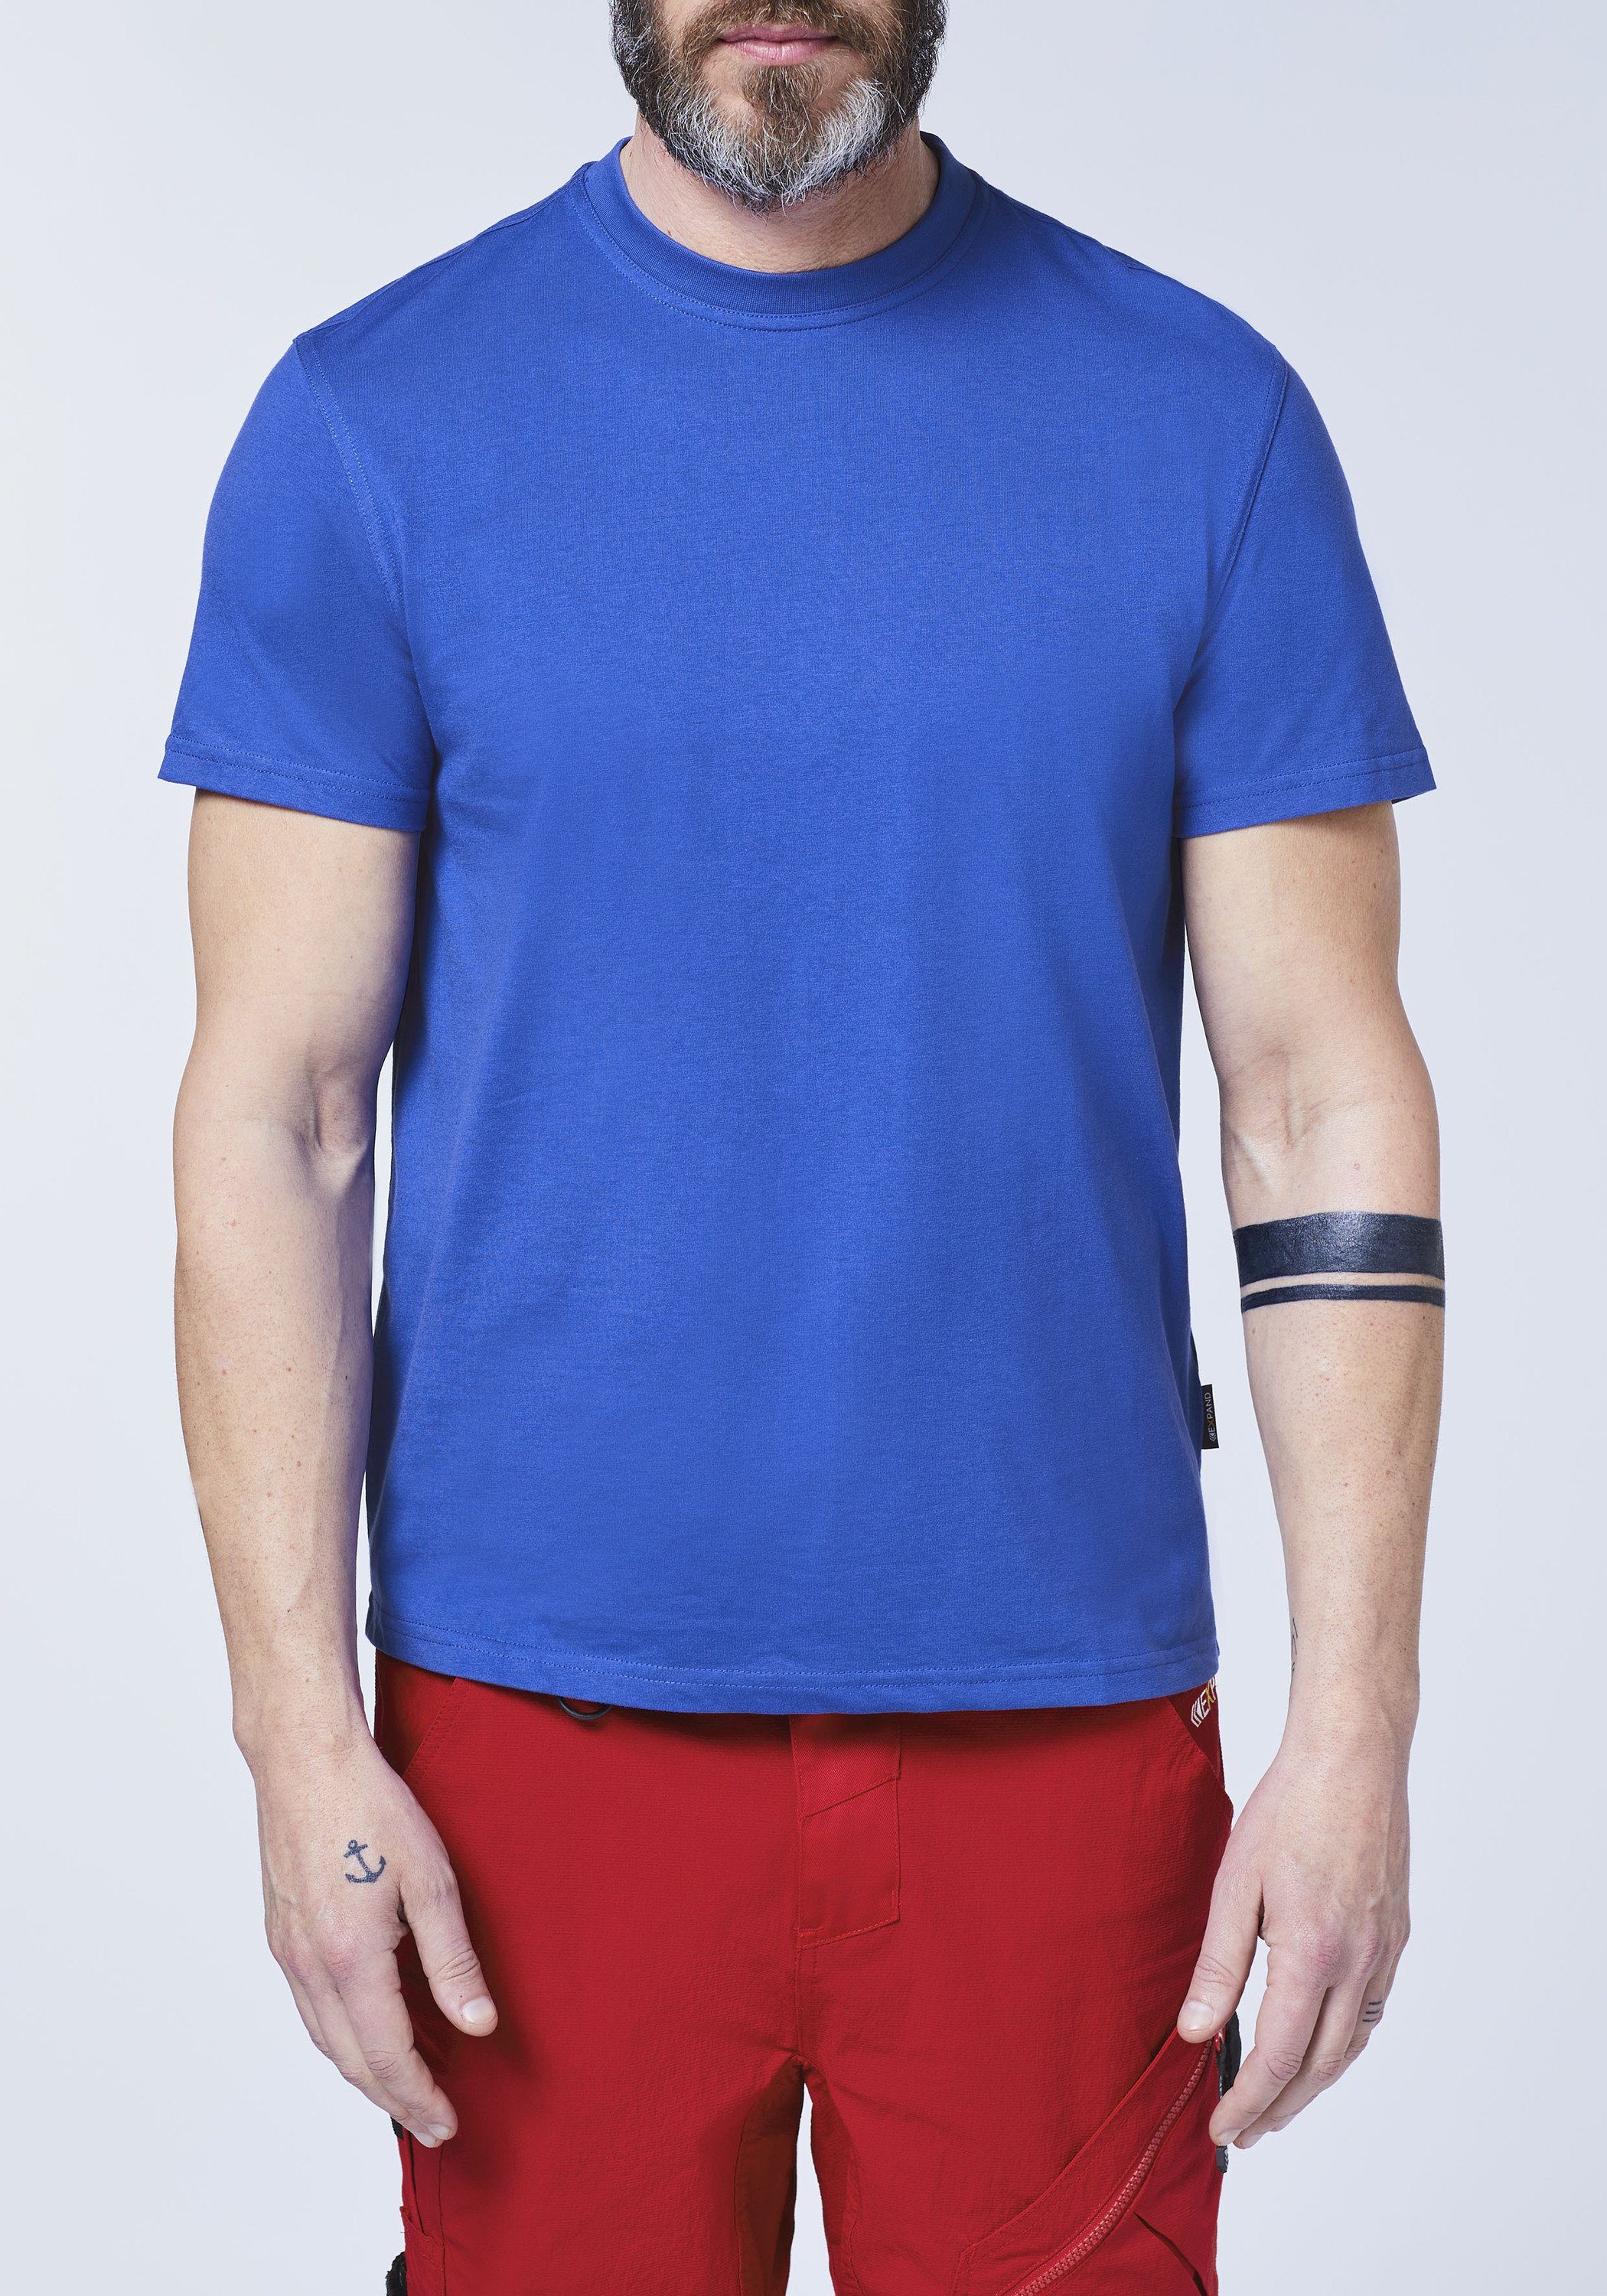 ultramarinblau T-Shirt einlaufvorbehandelt Expand